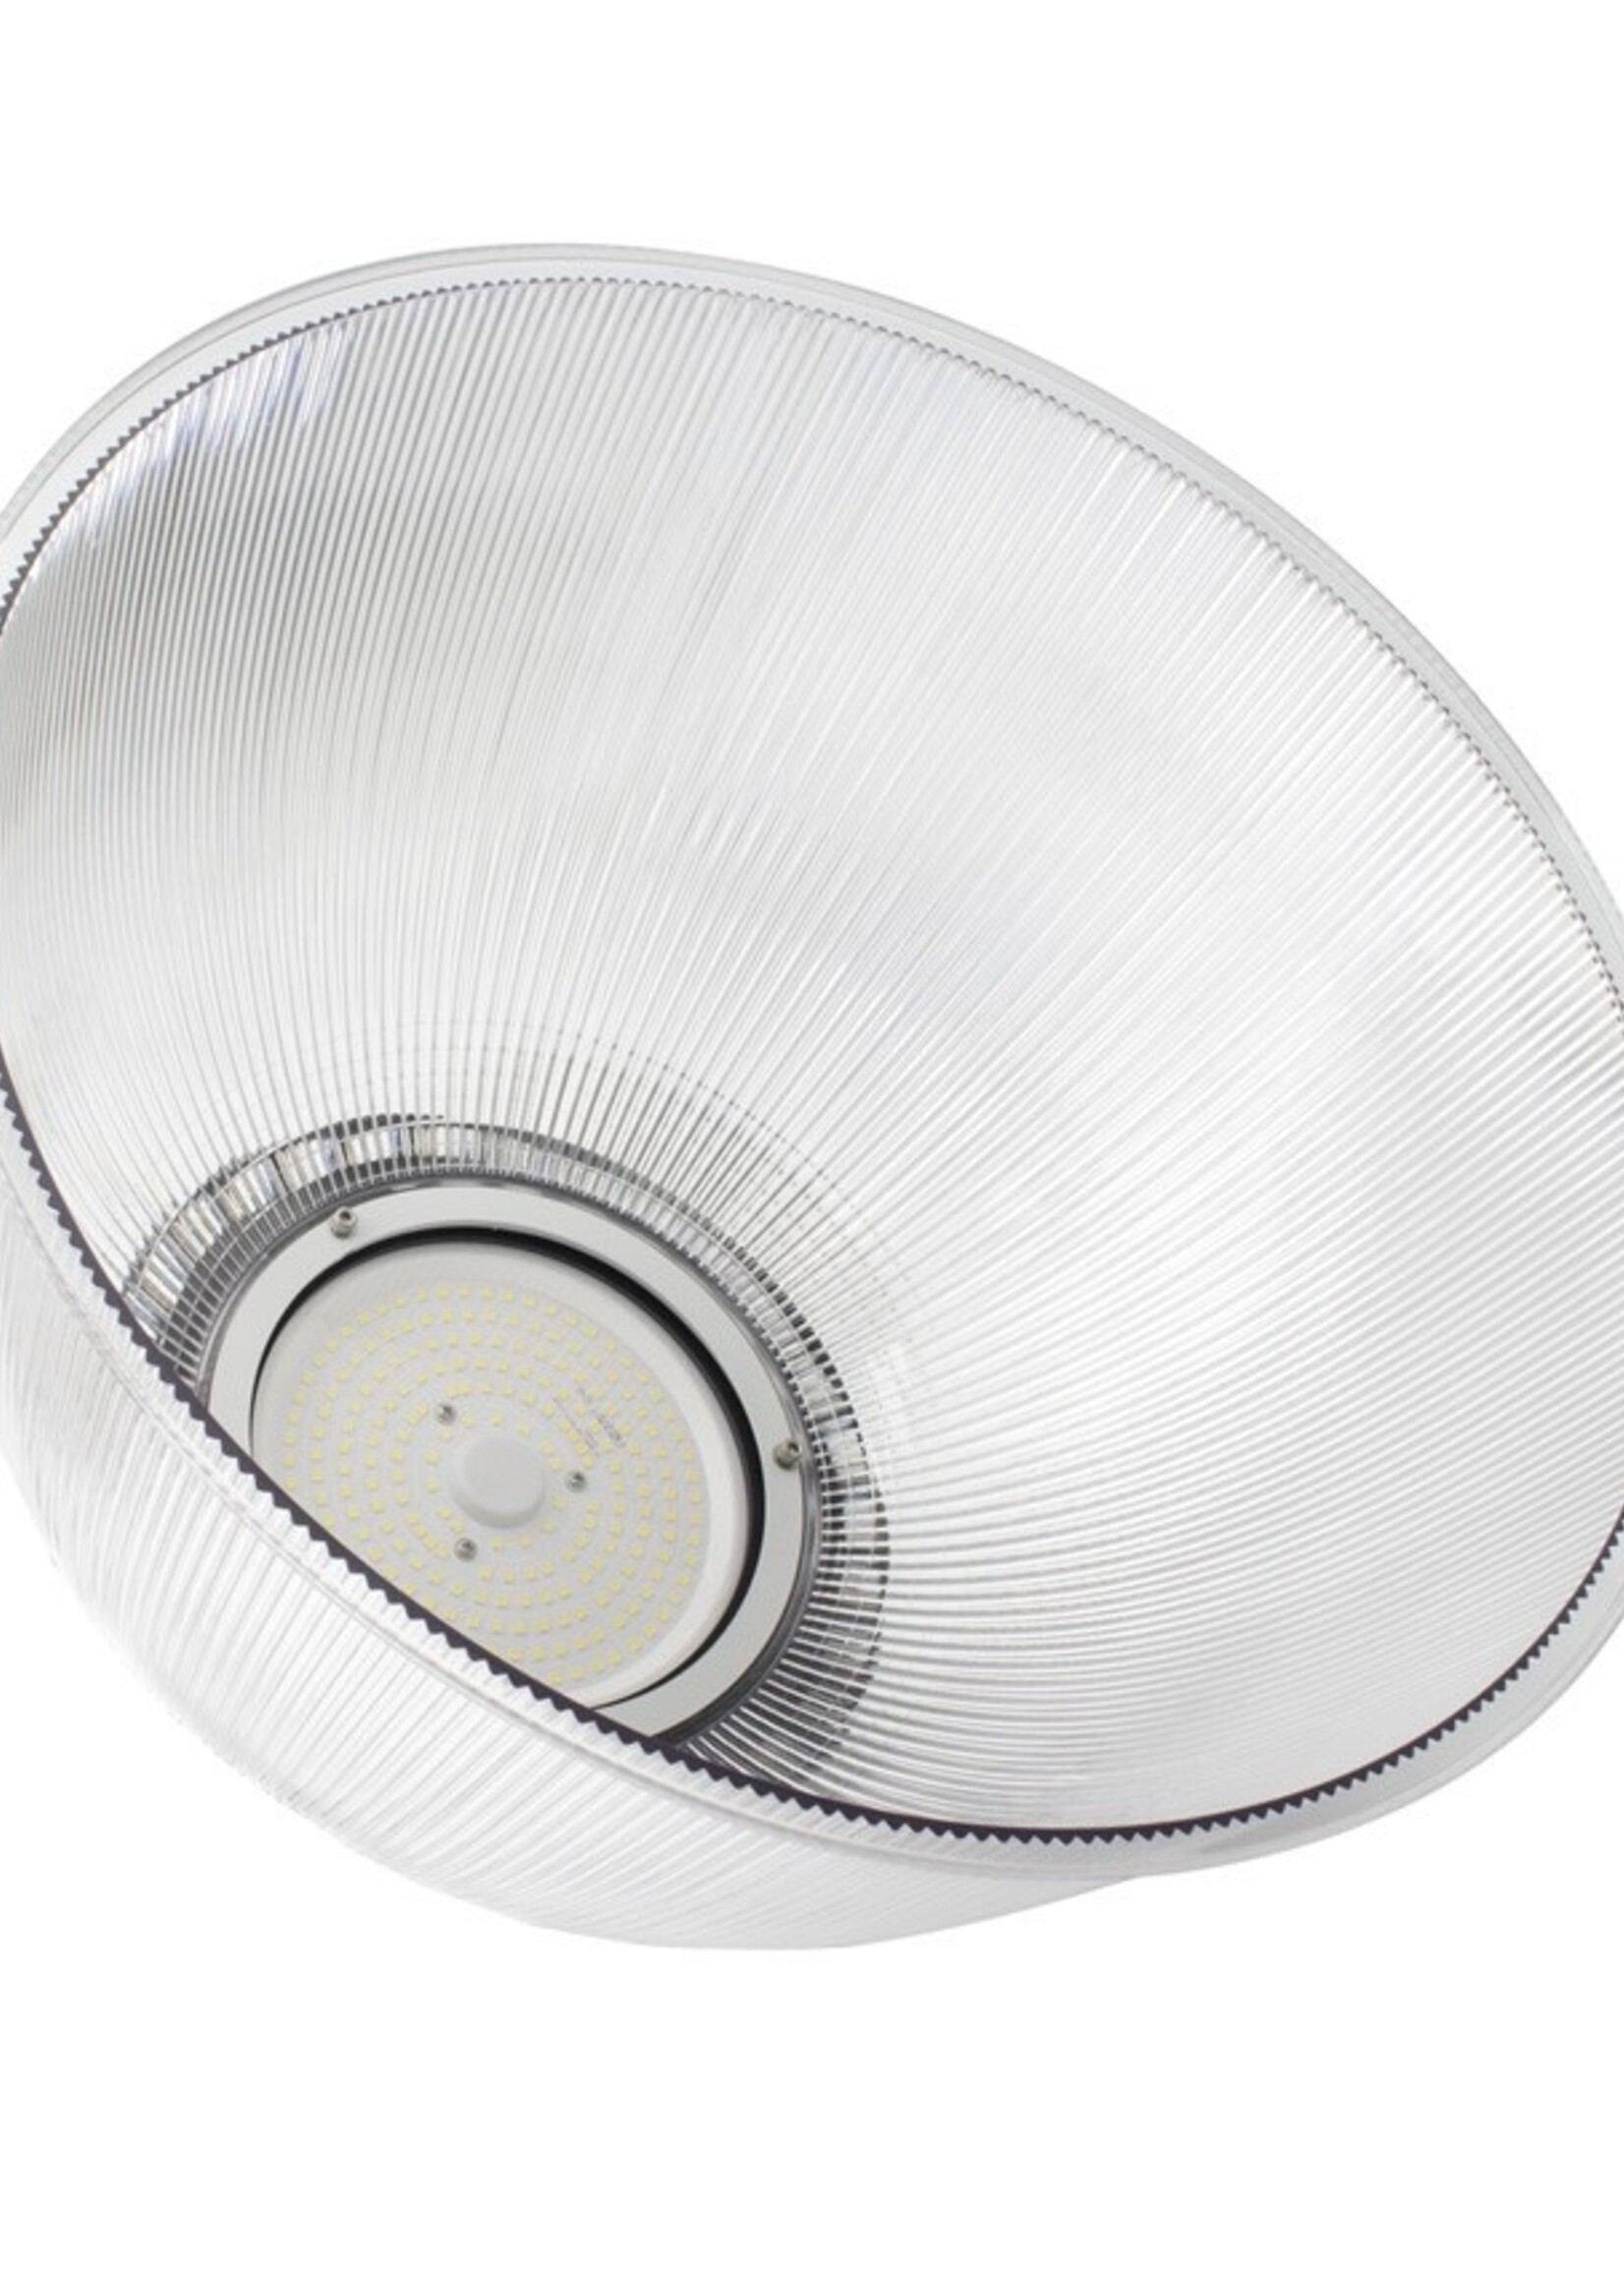 LEDWINKEL-Online LED UFO Highbay reflector kap voor 200W 410x235mm